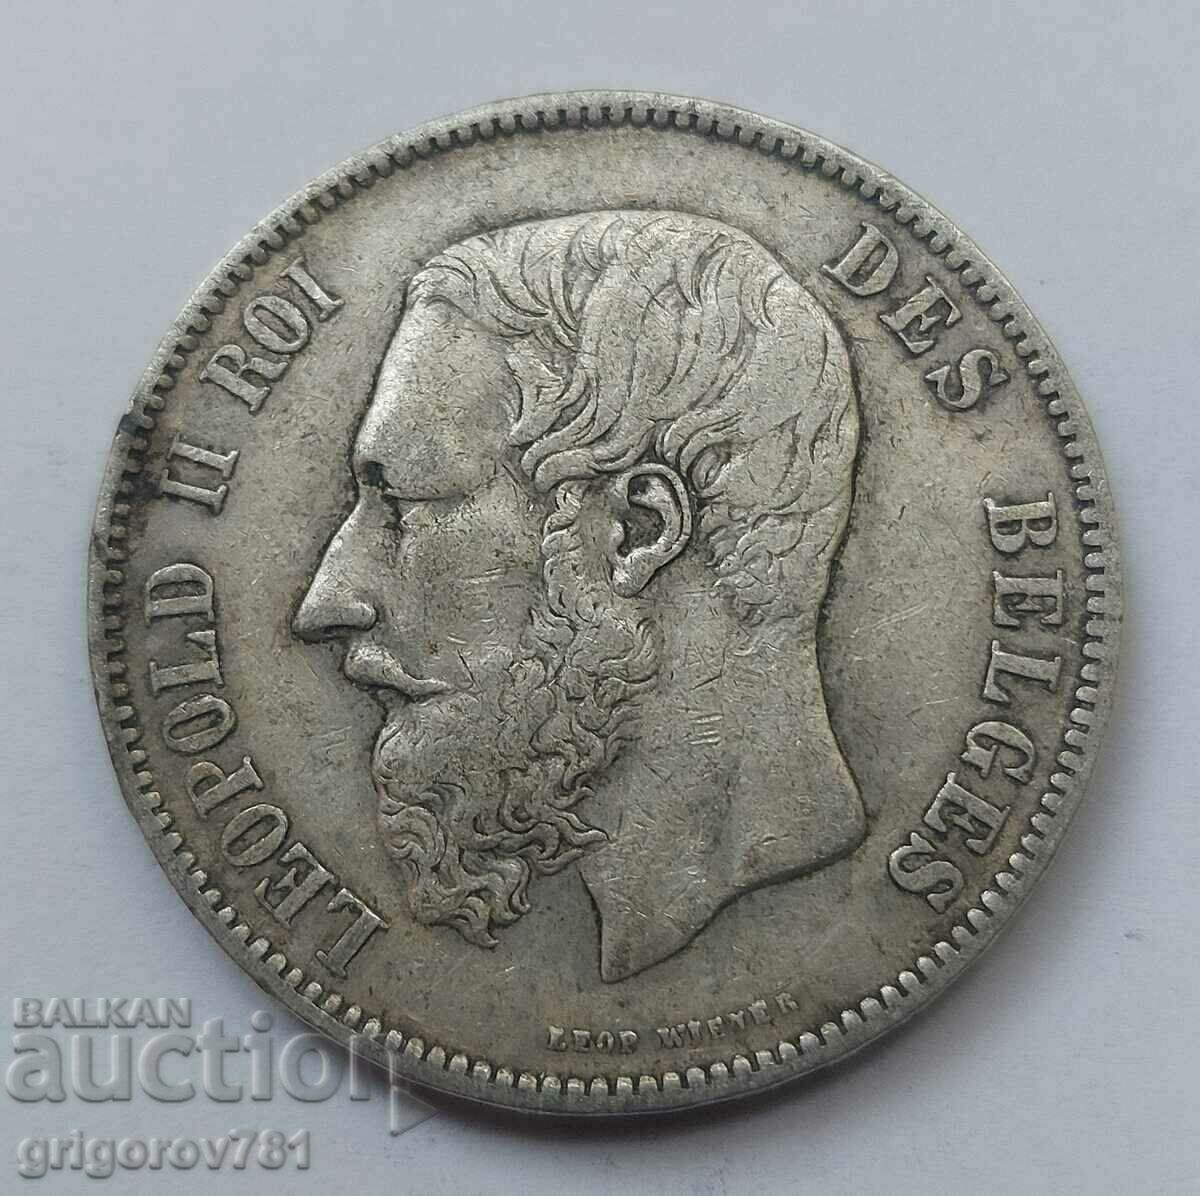 5 Francs Silver Belgium 1873 Silver Coin #175